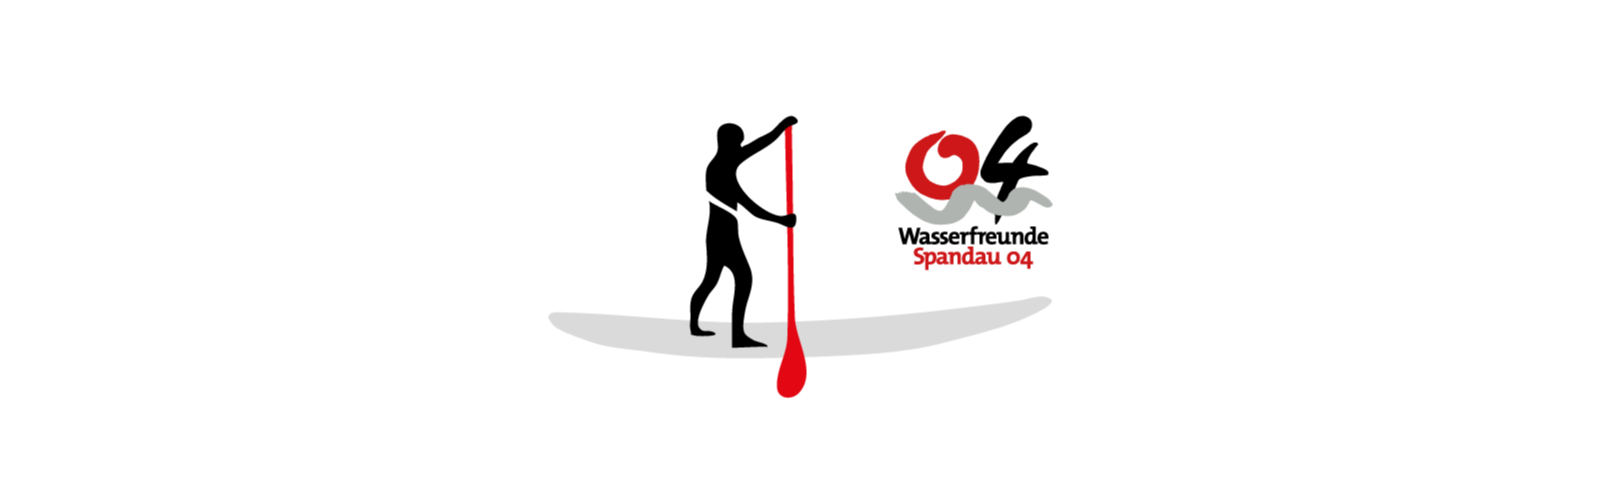 spandau_04_logo